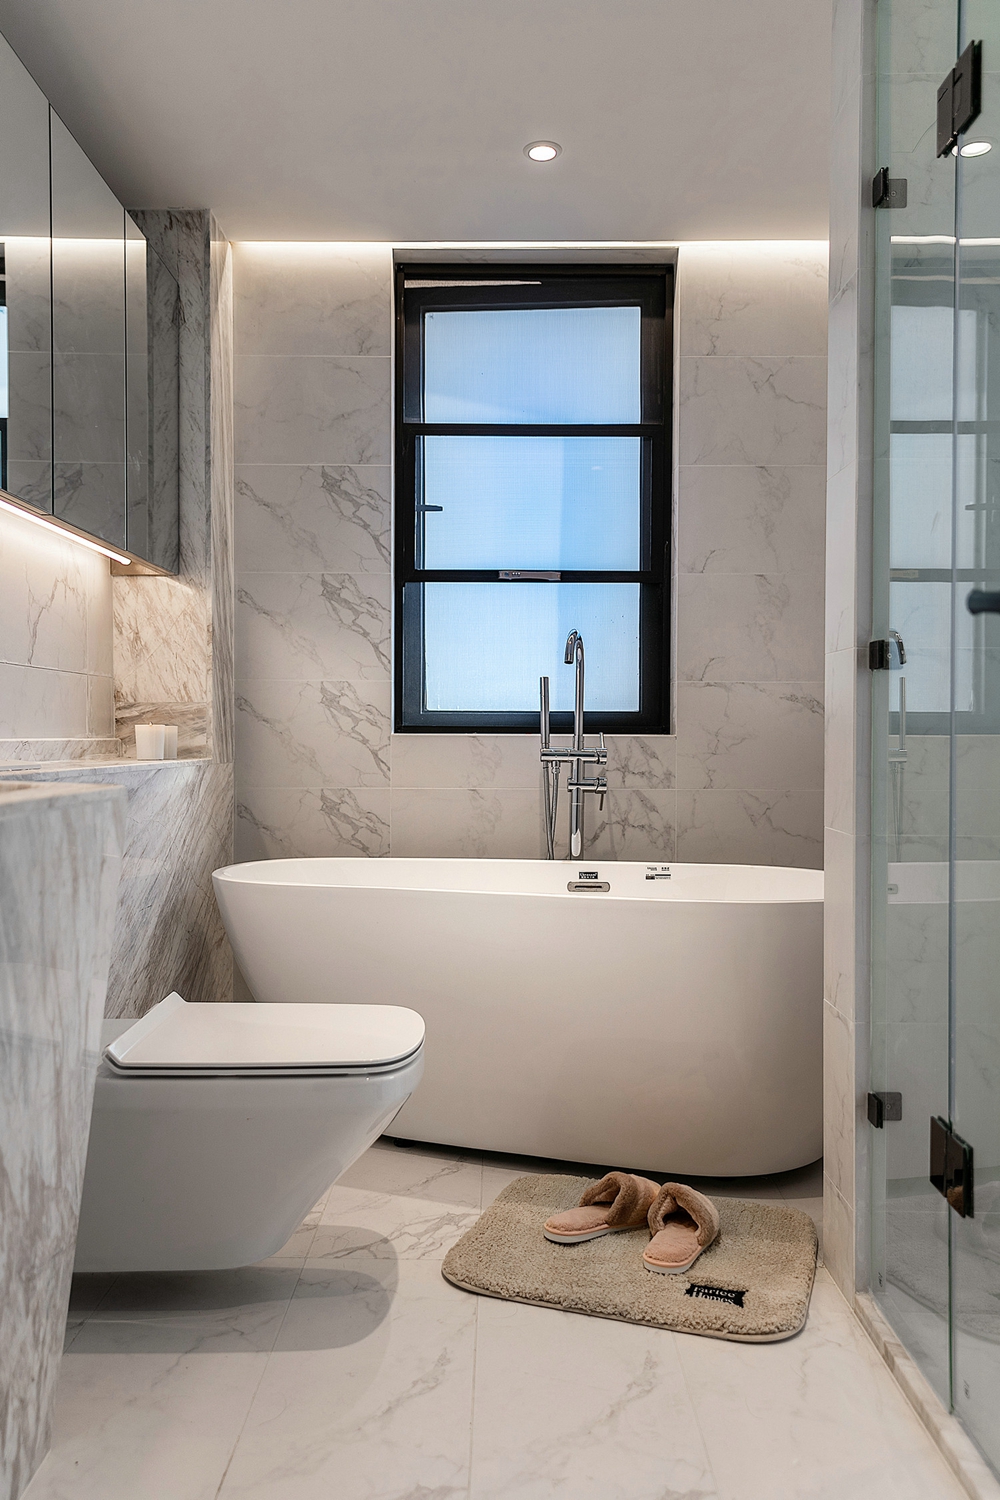 浴缸、淋浴房兼具，凸显主人追求舒适感的生活品味，视觉效果洁净大方。